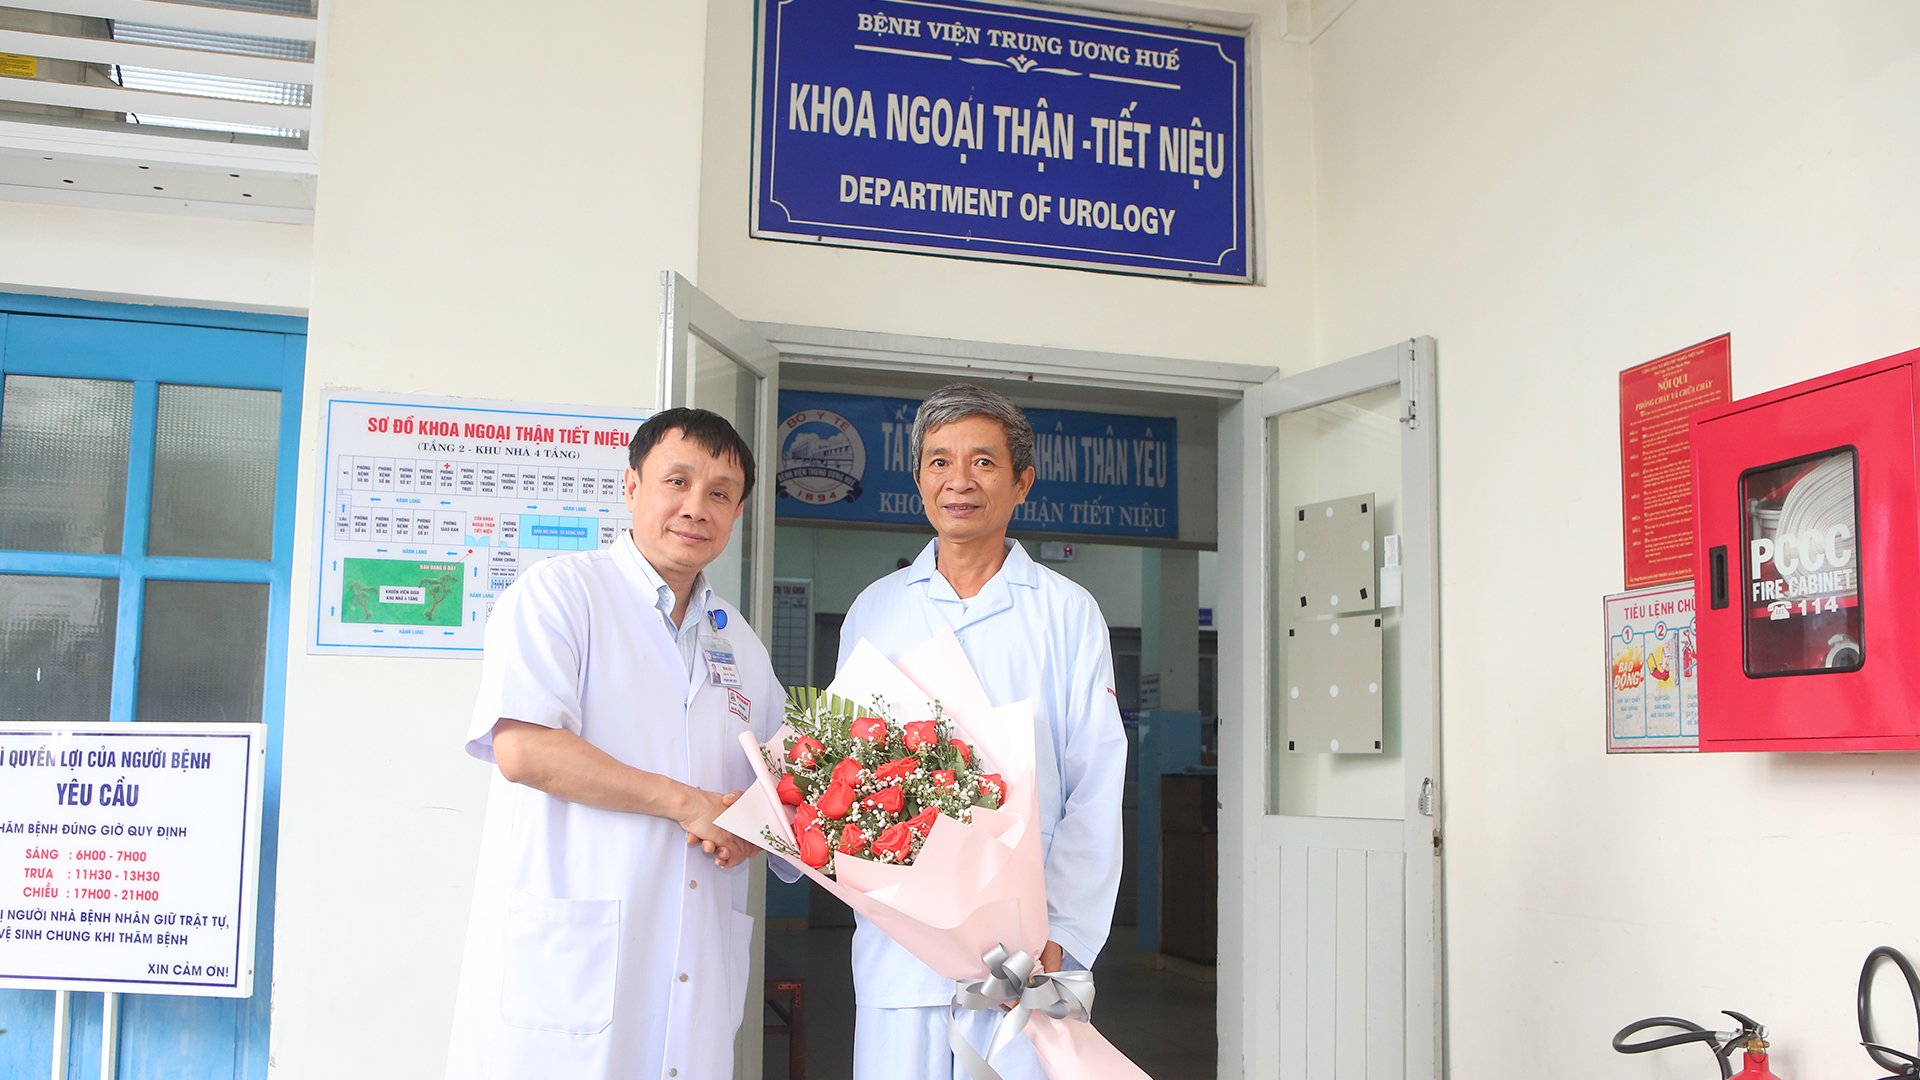 GS. TS Phạm Như Hiệp, giám đốc Bệnh viện Trung ương Huế tặng hoa chúc mừng bệnh nhân trước giờ xuất viện